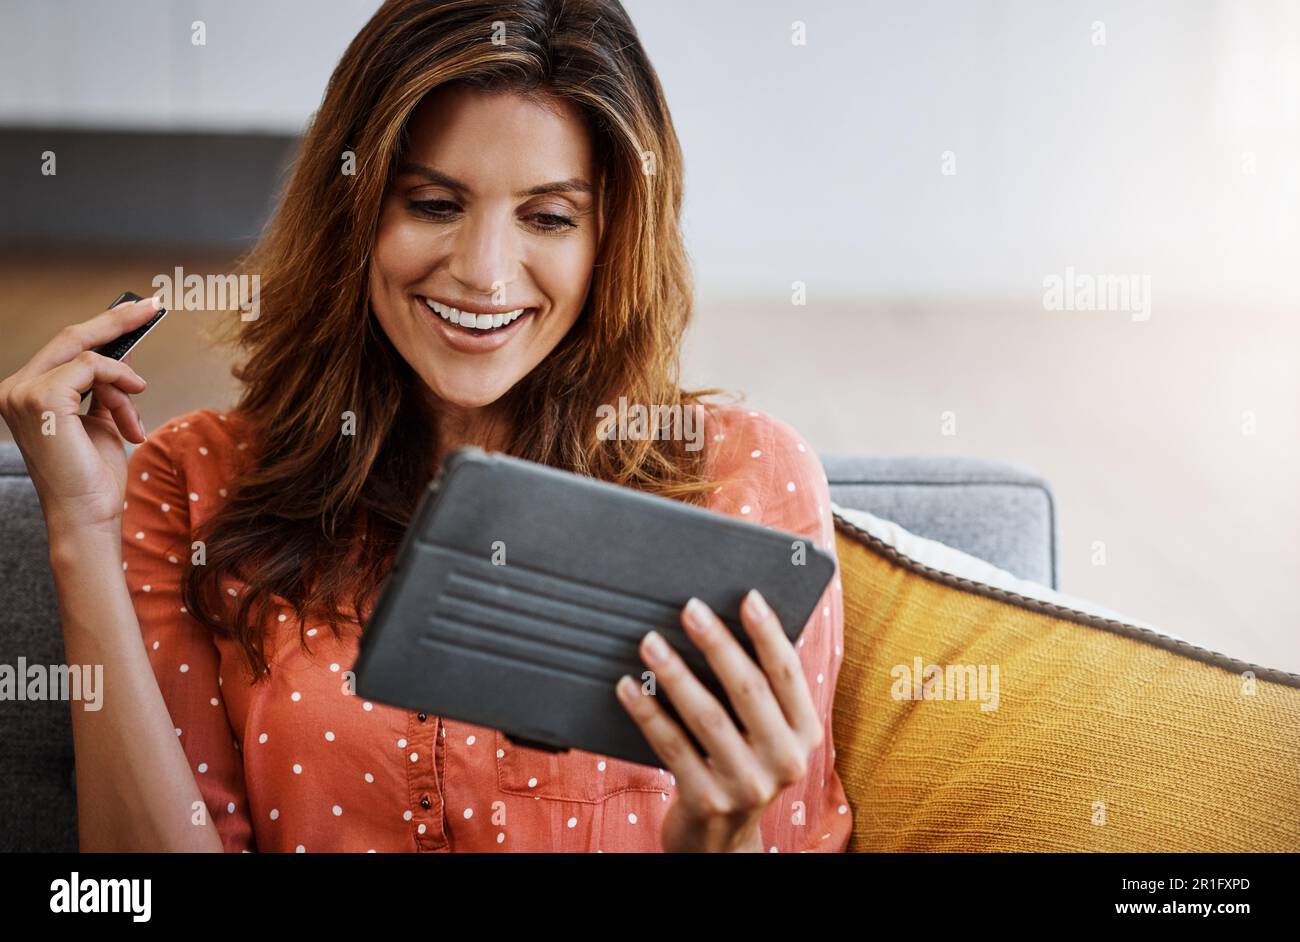 Confort et commodité, deux des plus grands avantages. une jeune femme attrayante utilisant une tablette numérique et une carte de crédit sur le canapé à la maison. Banque D'Images